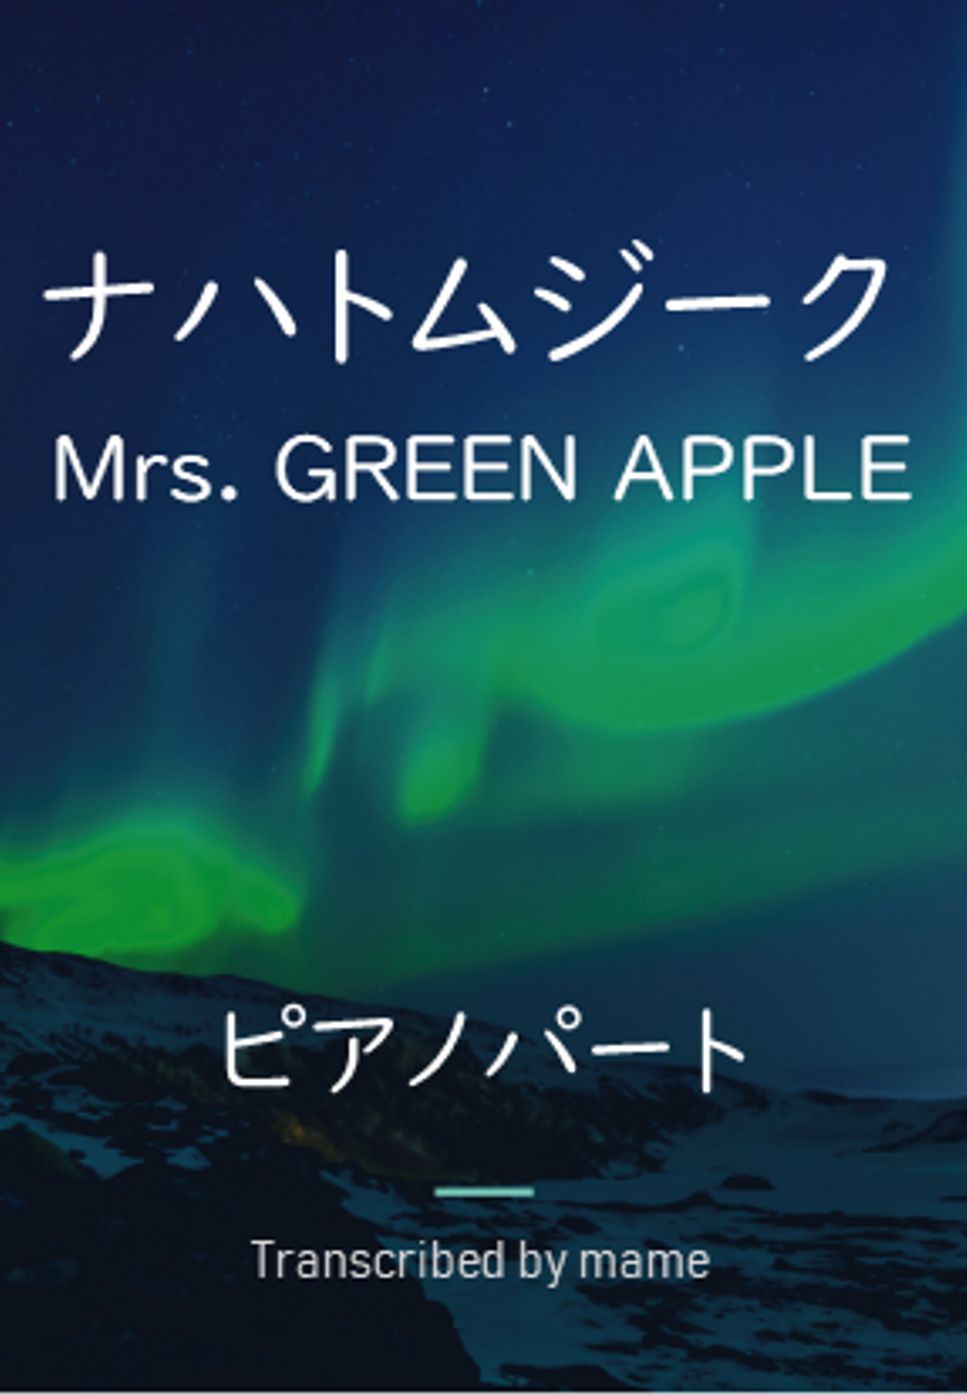 Mrs. GREEN APPLE - ナハトムジーク (ピアノパート) by mame